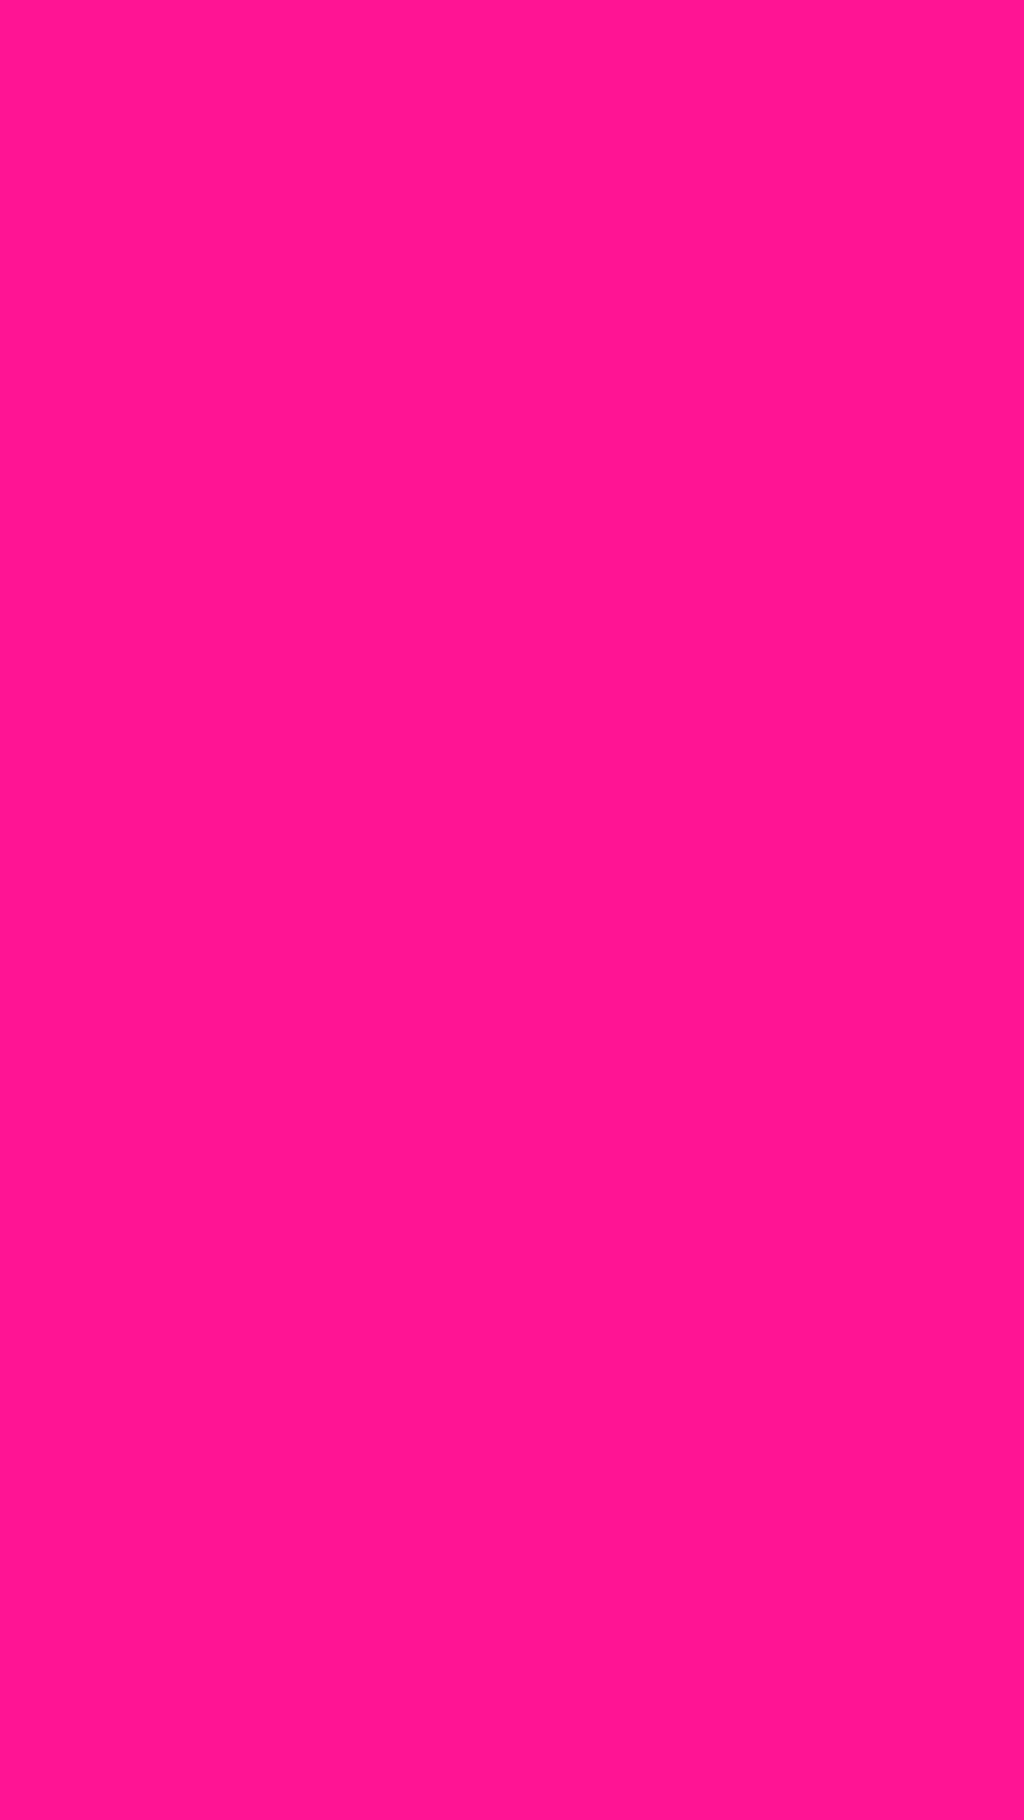 Ai nói rằng nền màu hồng chỉ là cho những cô gái hoặc phụ nữ? Hãy xem thử ảnh nền màu hồng của chúng tôi và bạn sẽ thấy rằng nó là một sự lựa chọn tuyệt vời cho tất cả mọi người. Nhấp vào hình ảnh để khám phá những thiết kế màu hồng đầy phong cách và tươi sáng này!